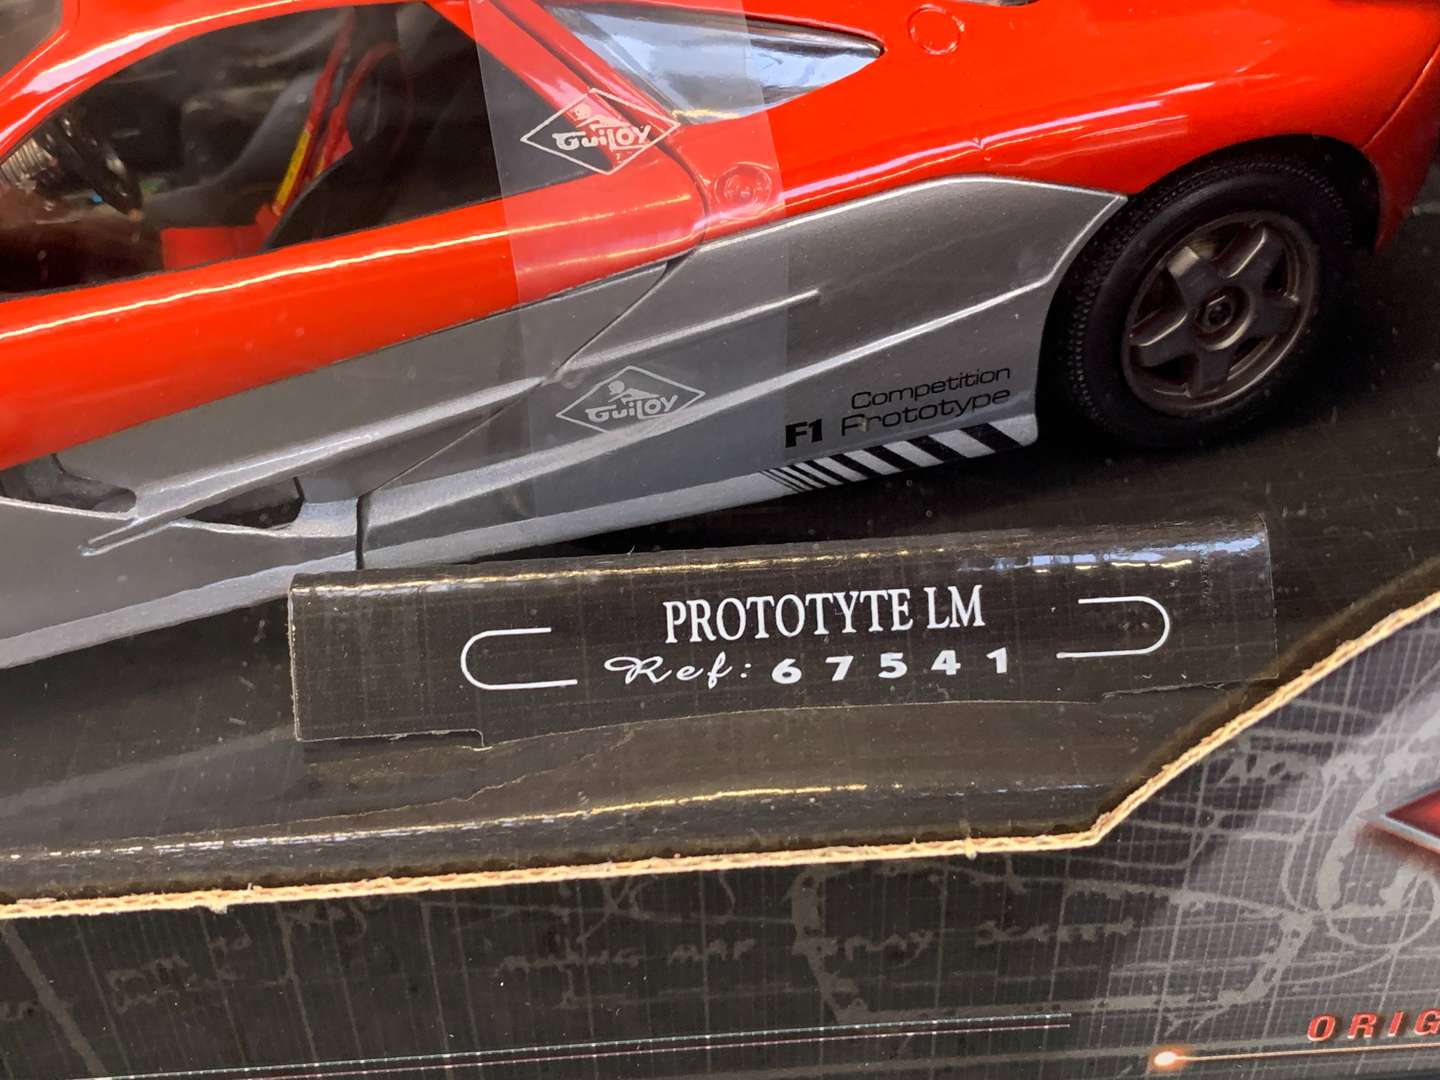 <p>Boxed Guiloy Die Cast Prototyte LM Car 1:18 Scale</p>